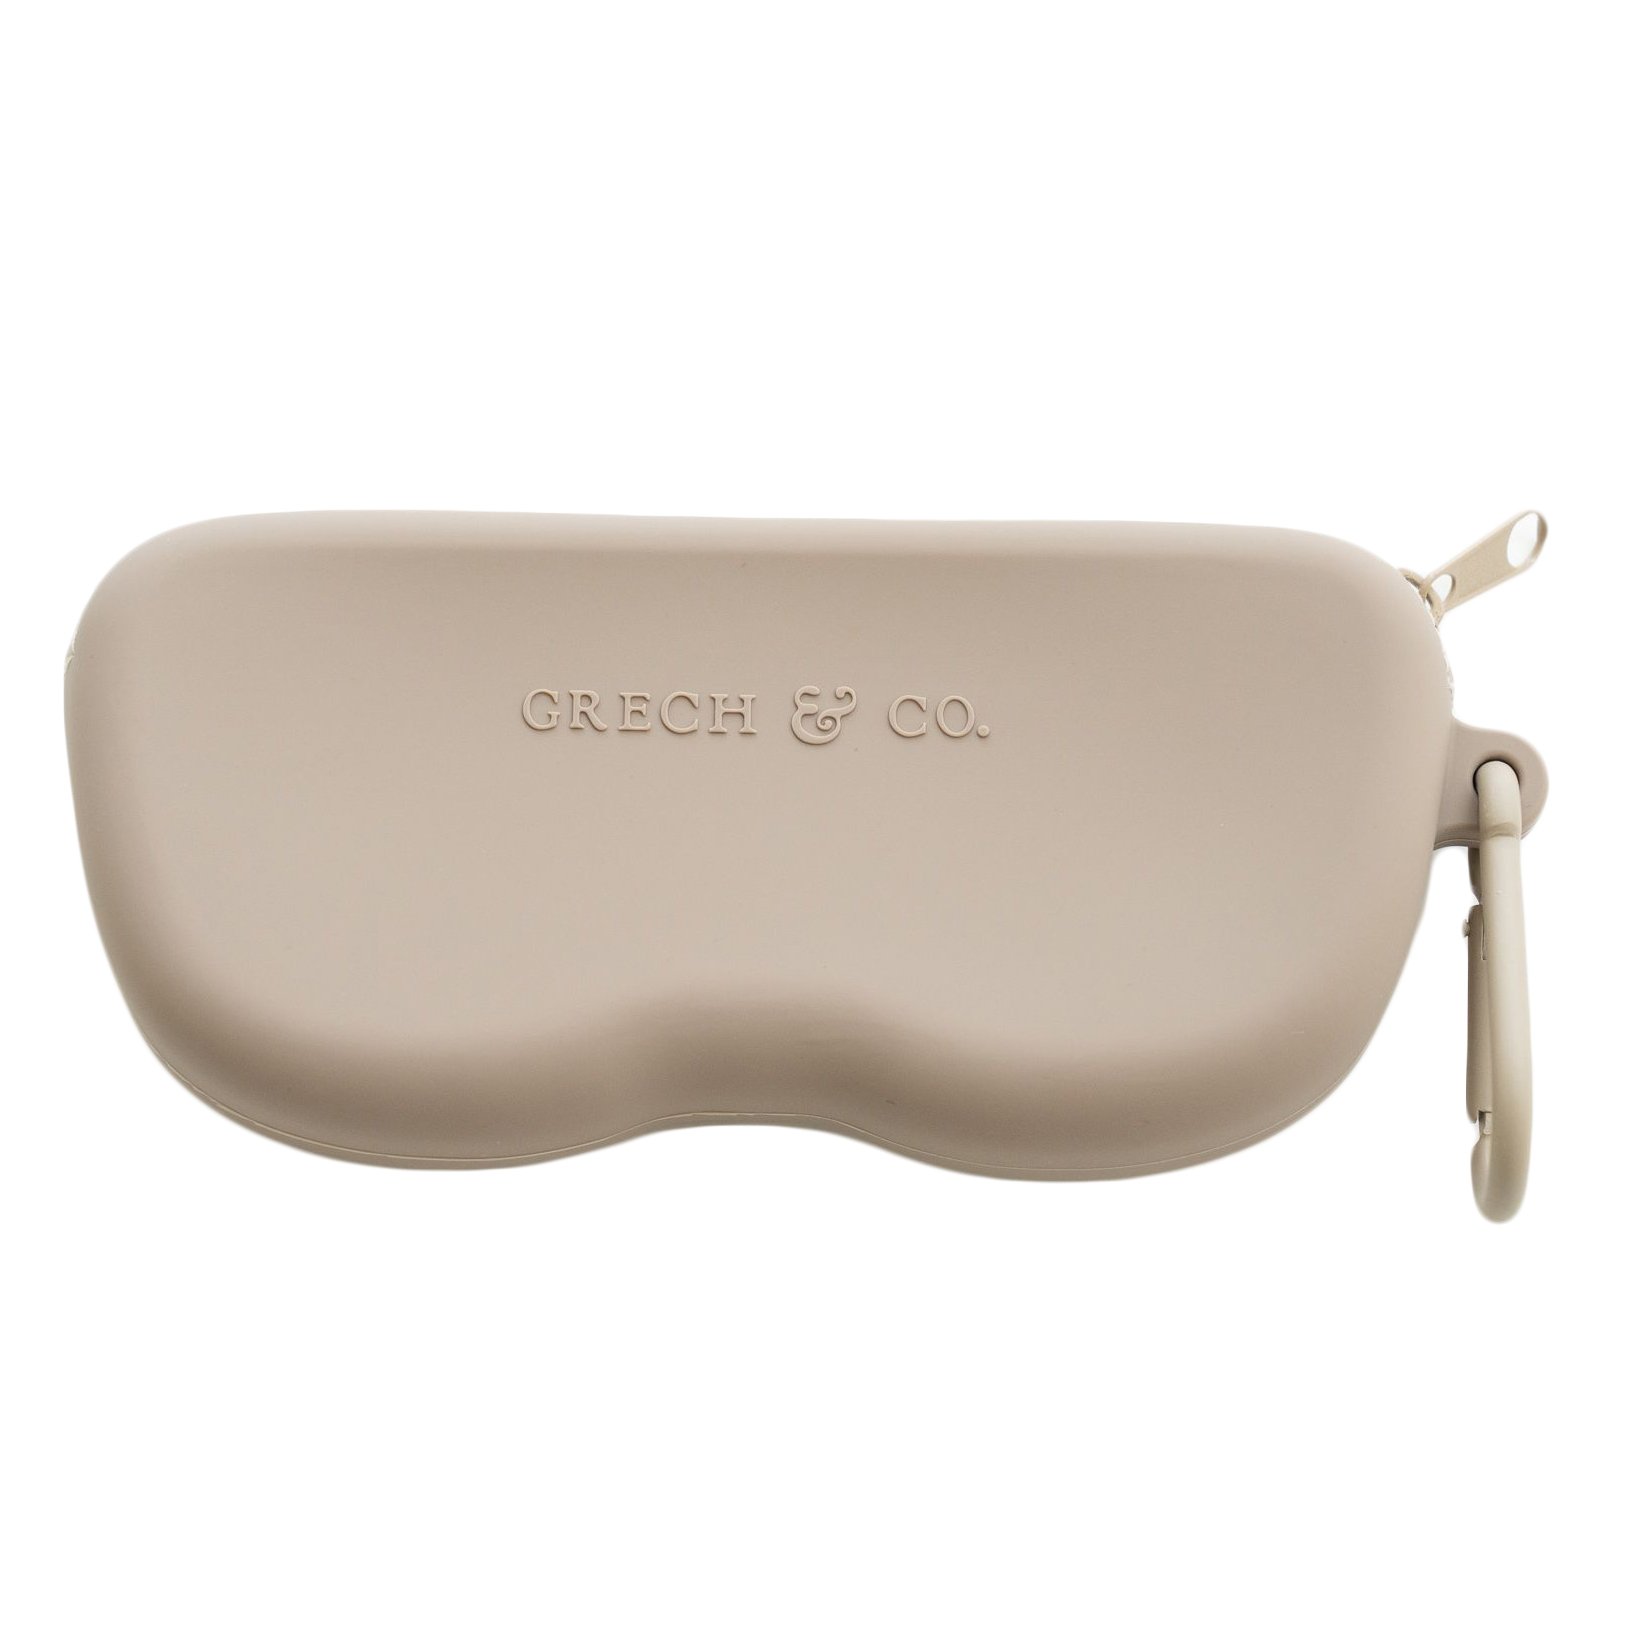 Grech & Co Sunglasses Case